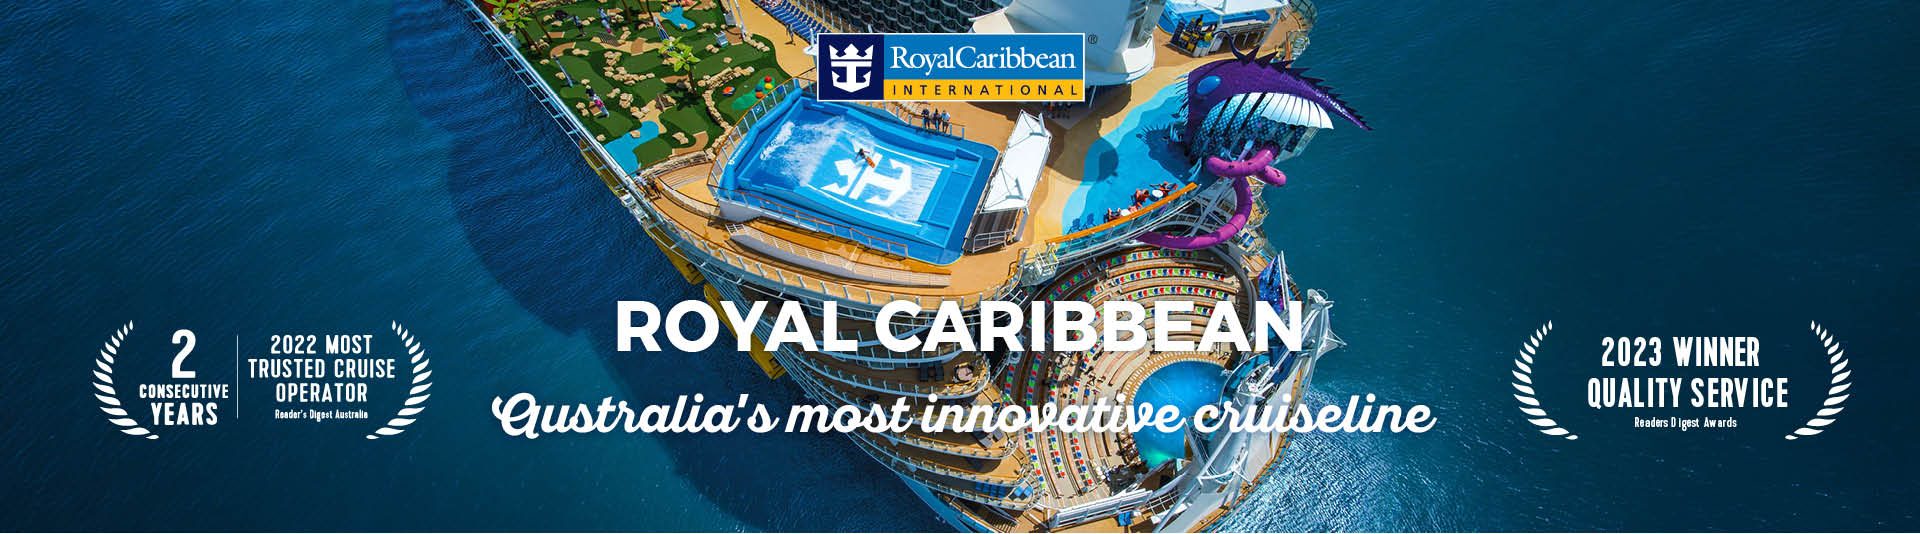 royal-caribbean-1.jpg